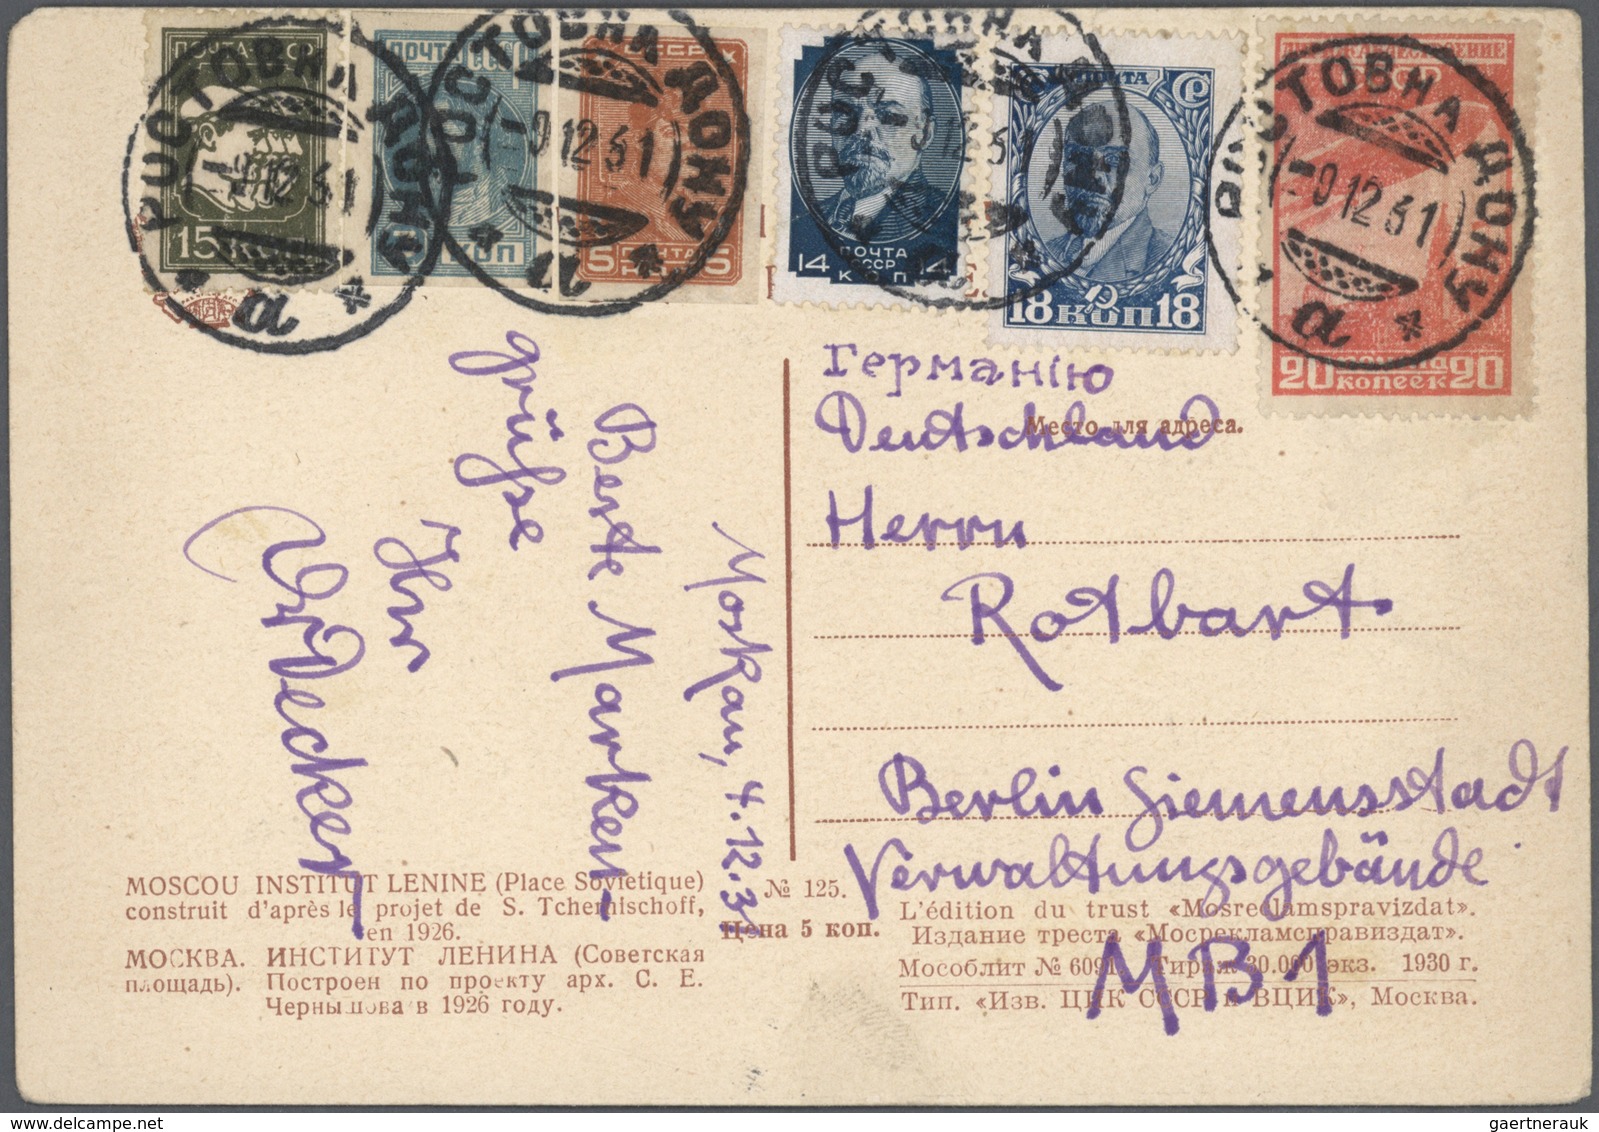 Br Russland: 1850/1950ca., hochwertiger Briefebestand aus Uralt-Nachlass mit vielen interessanten und g